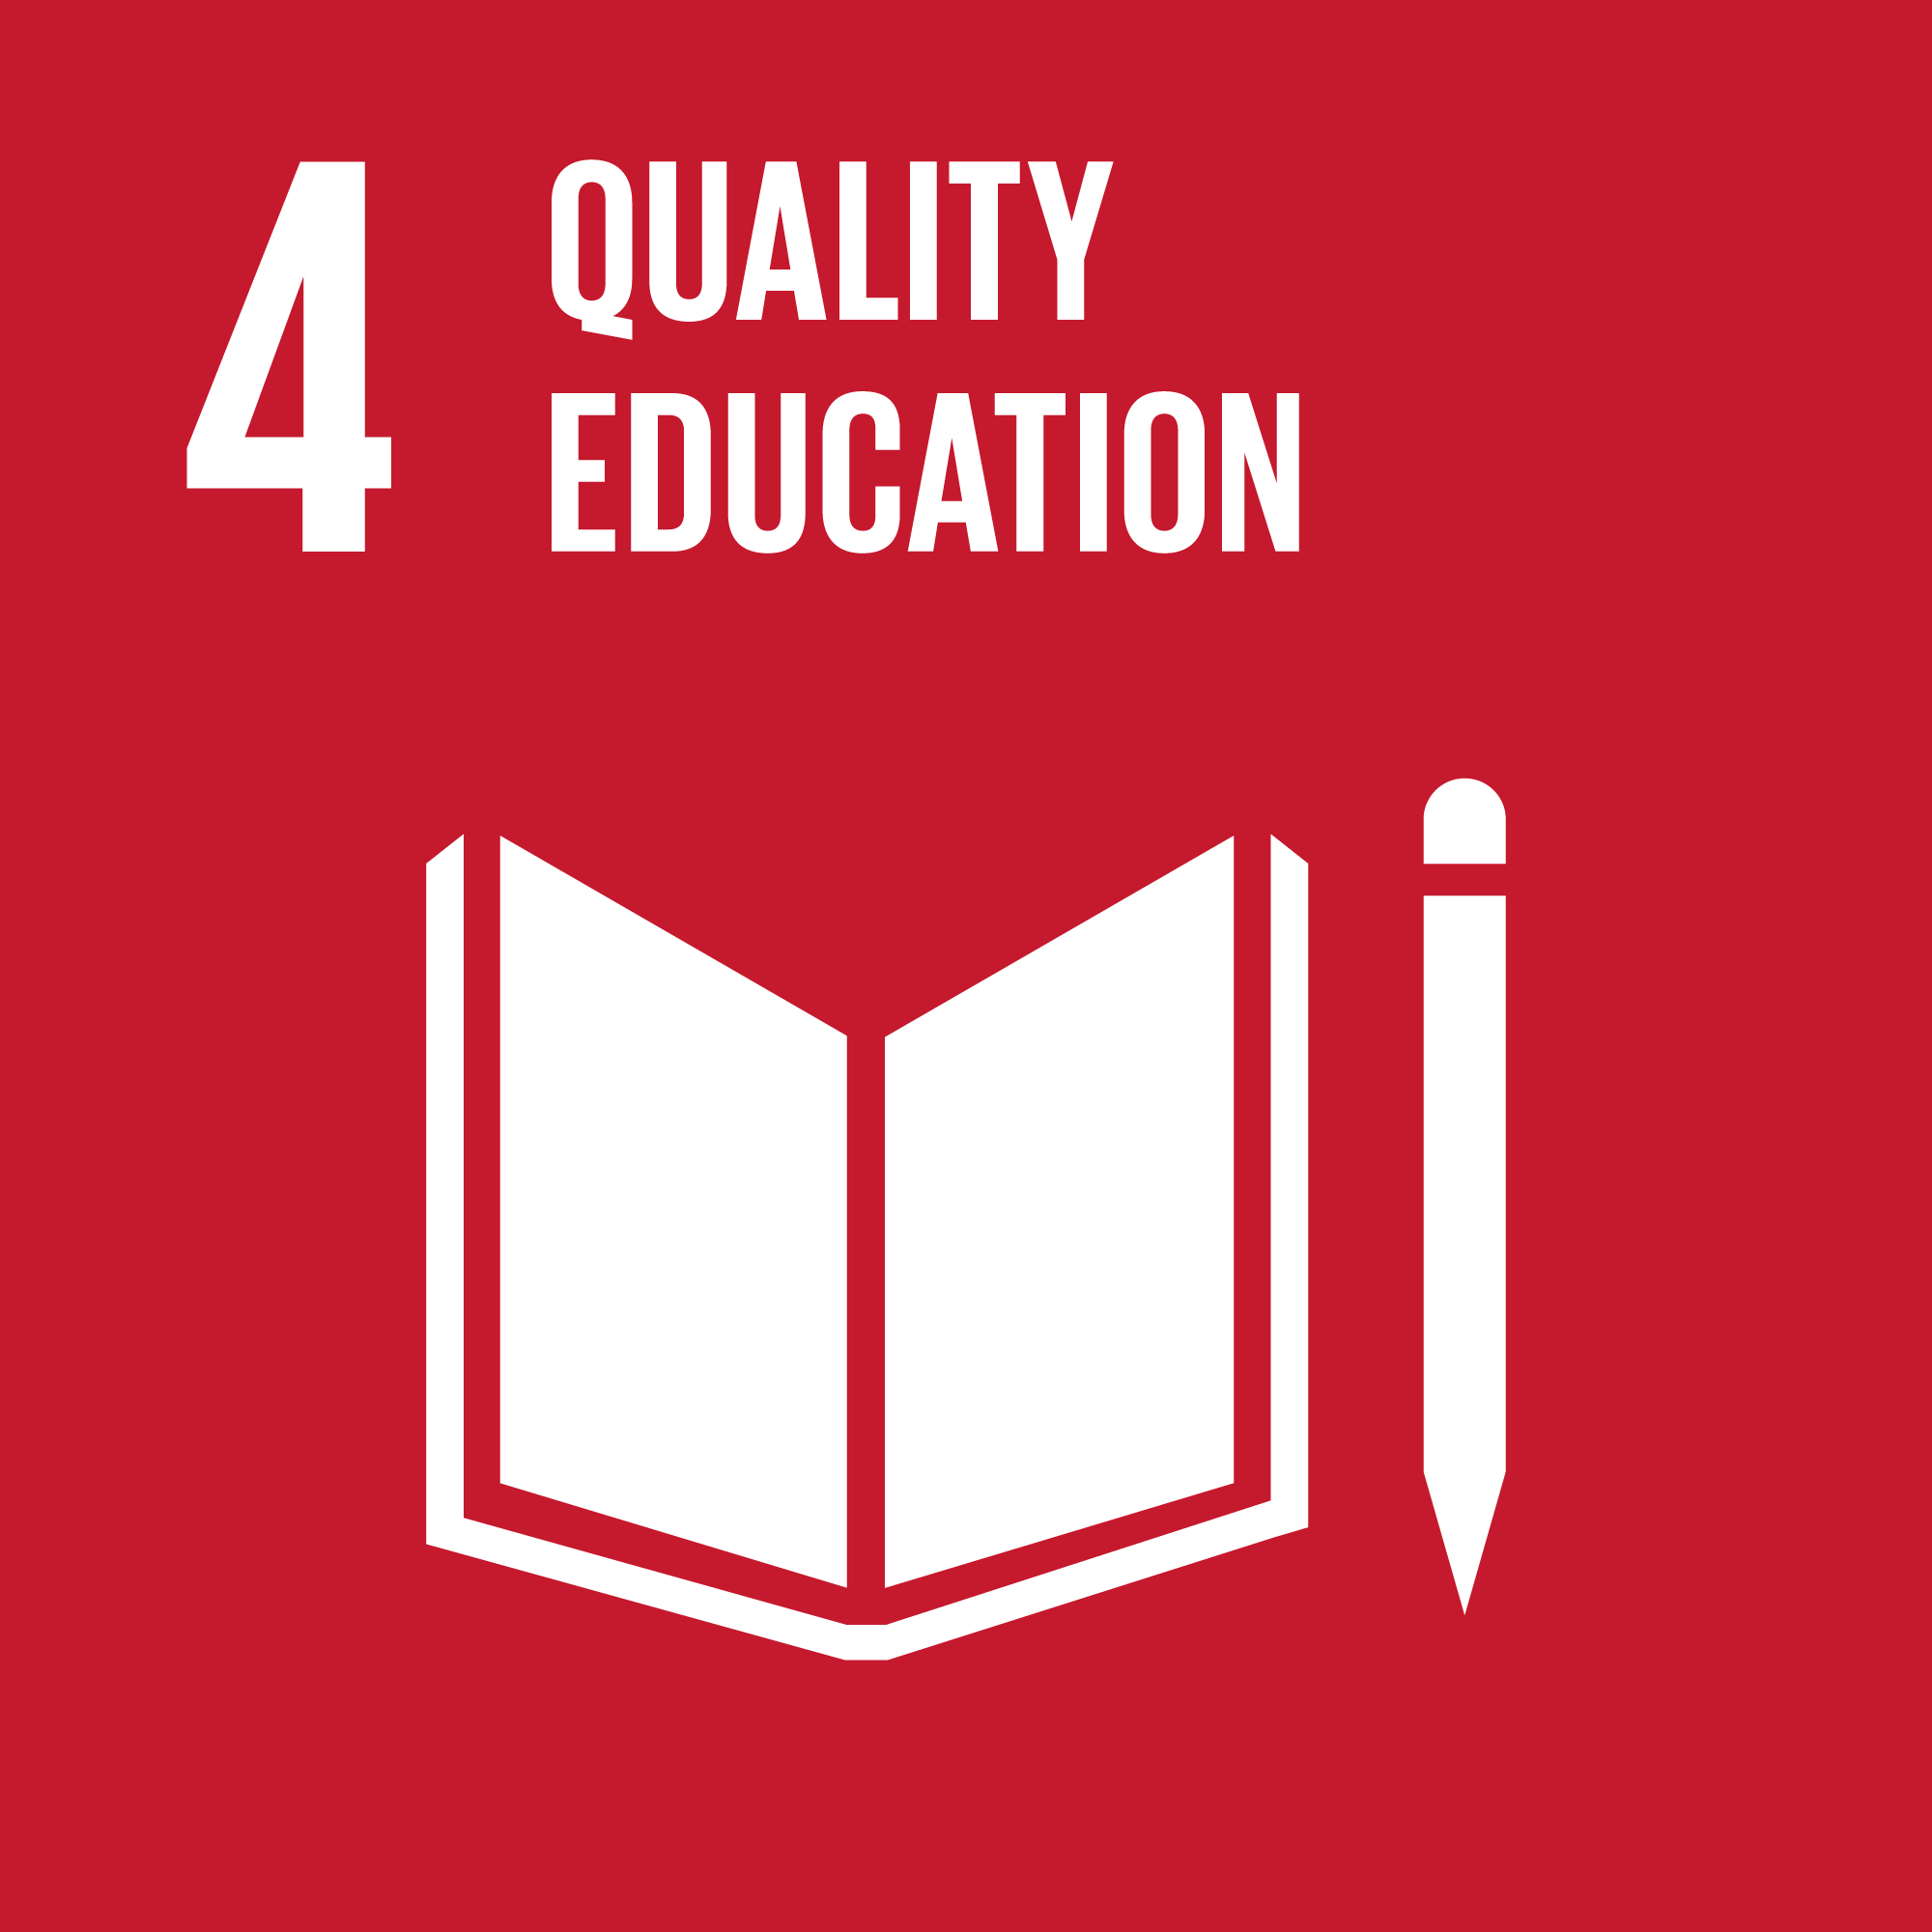 # 4 Istruzione di qualità